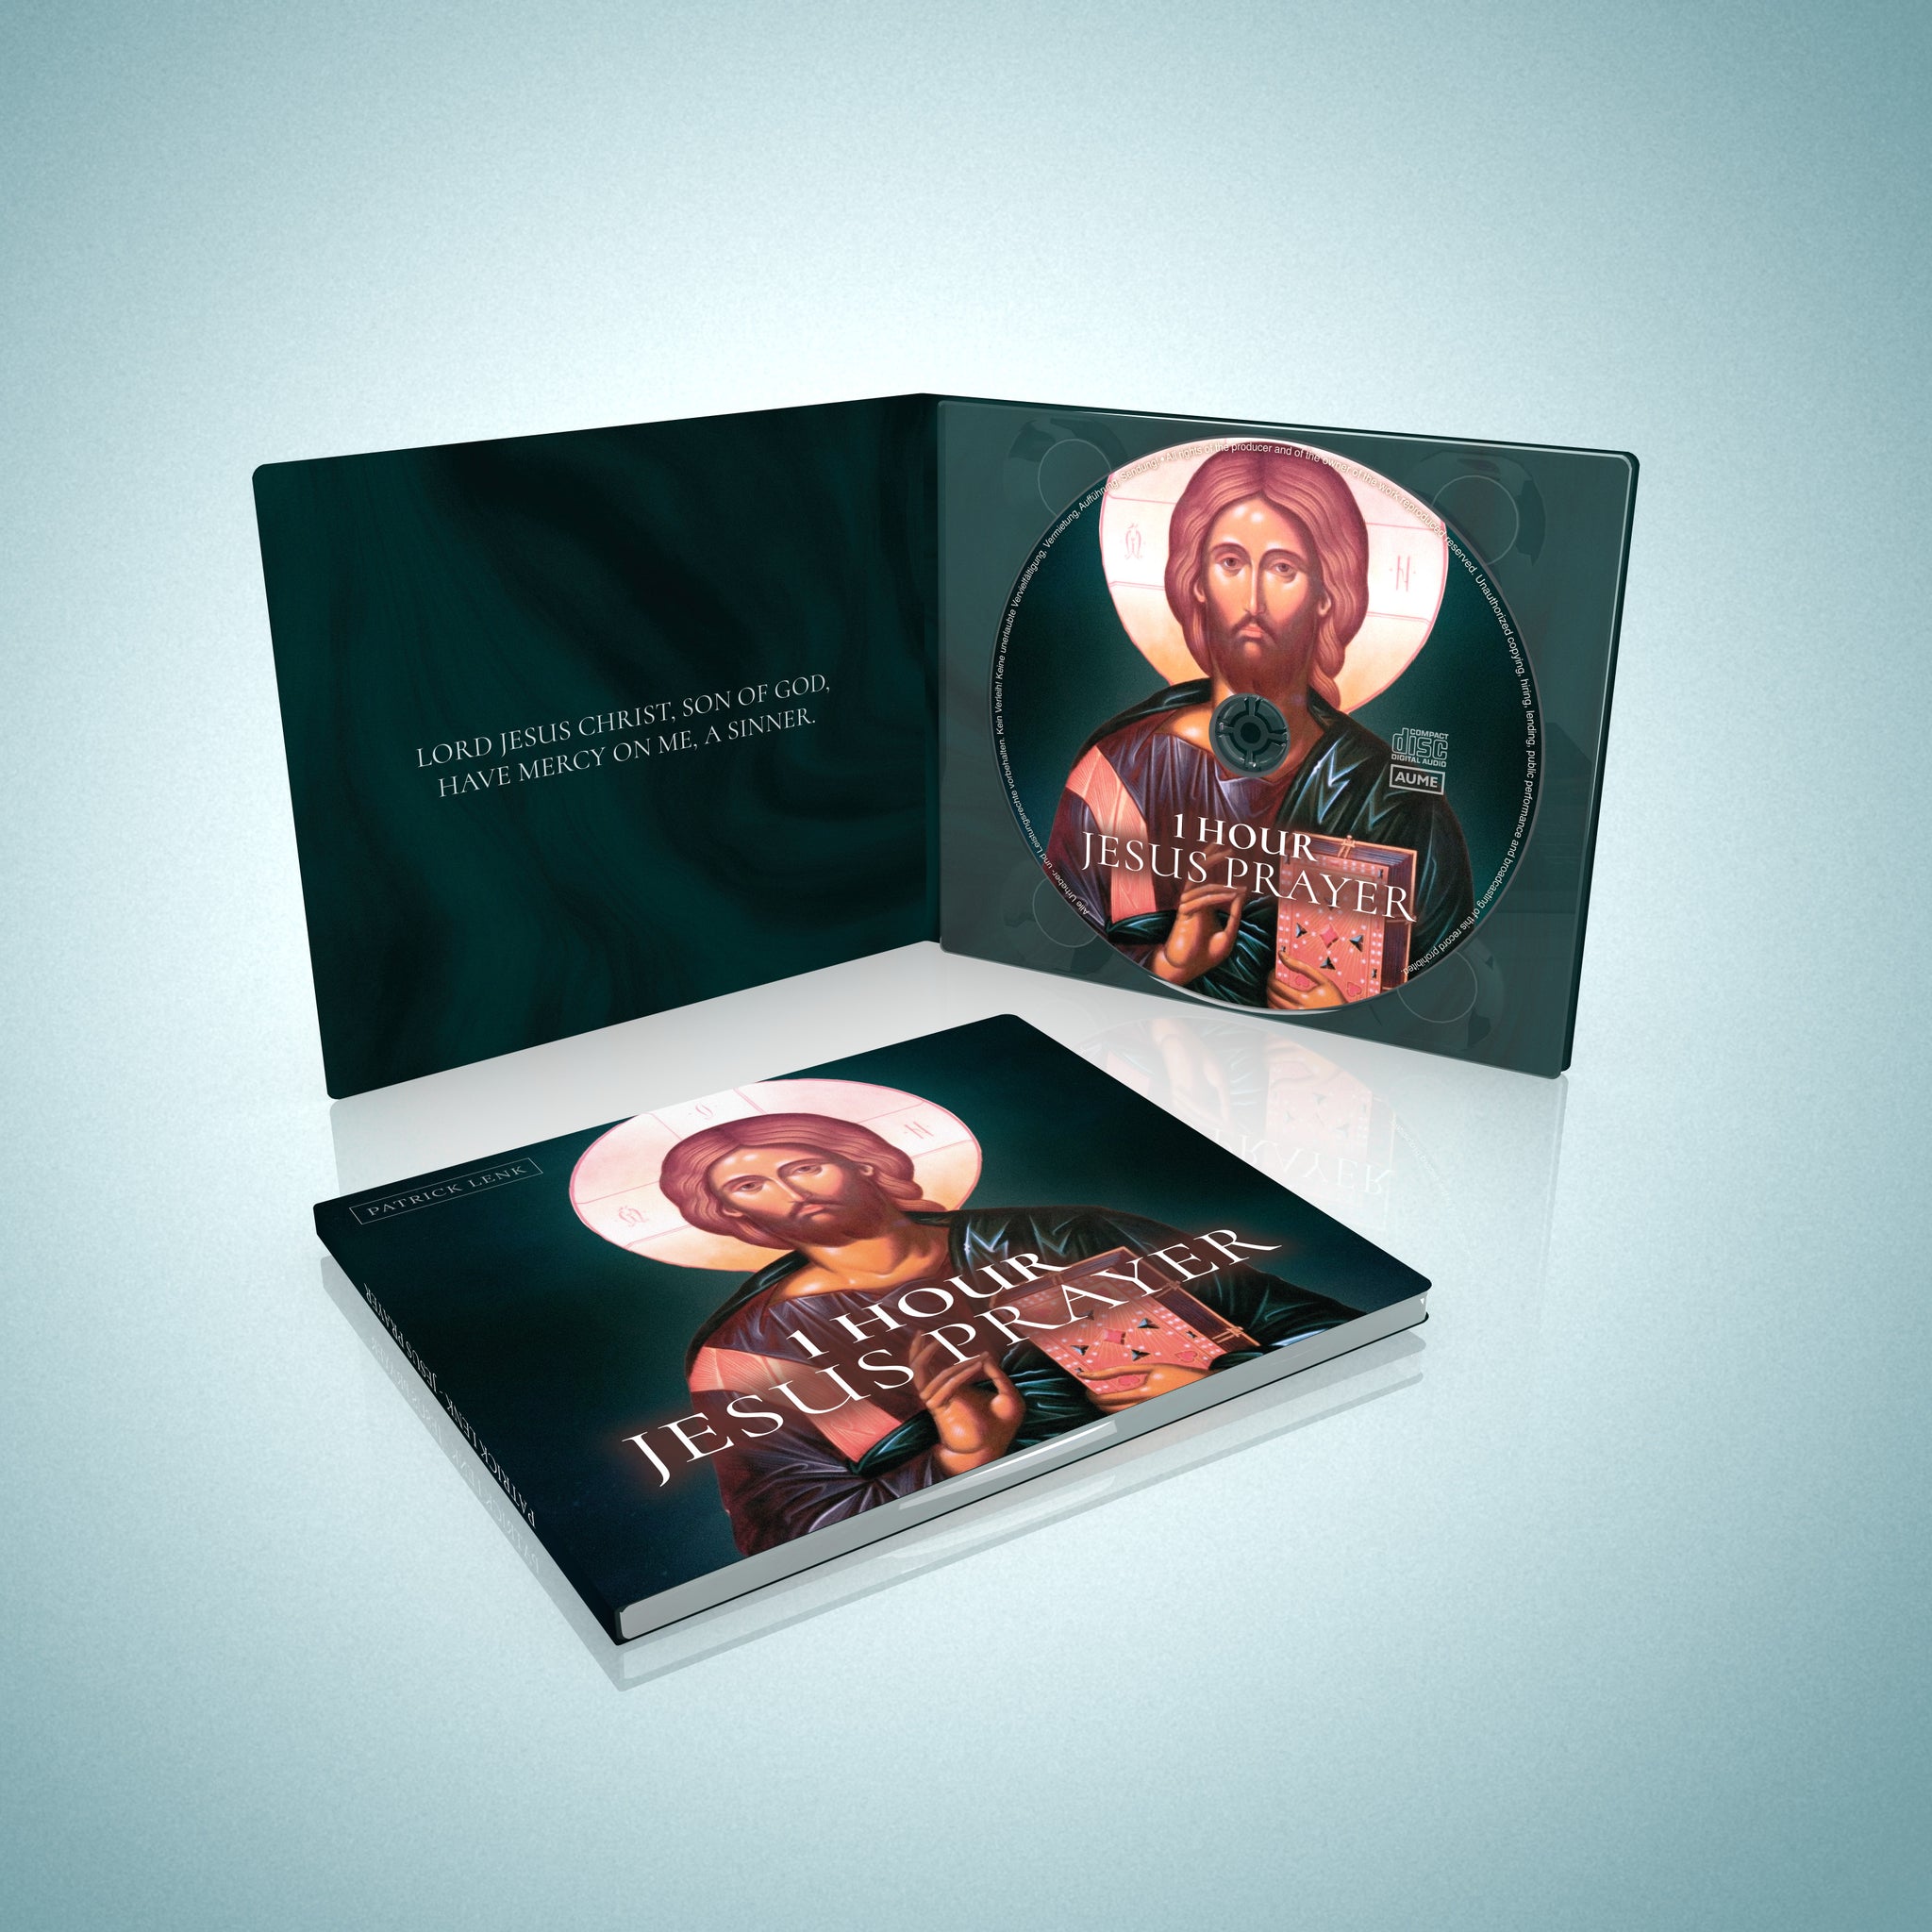 1 Hour Jesus Prayer English (CD)